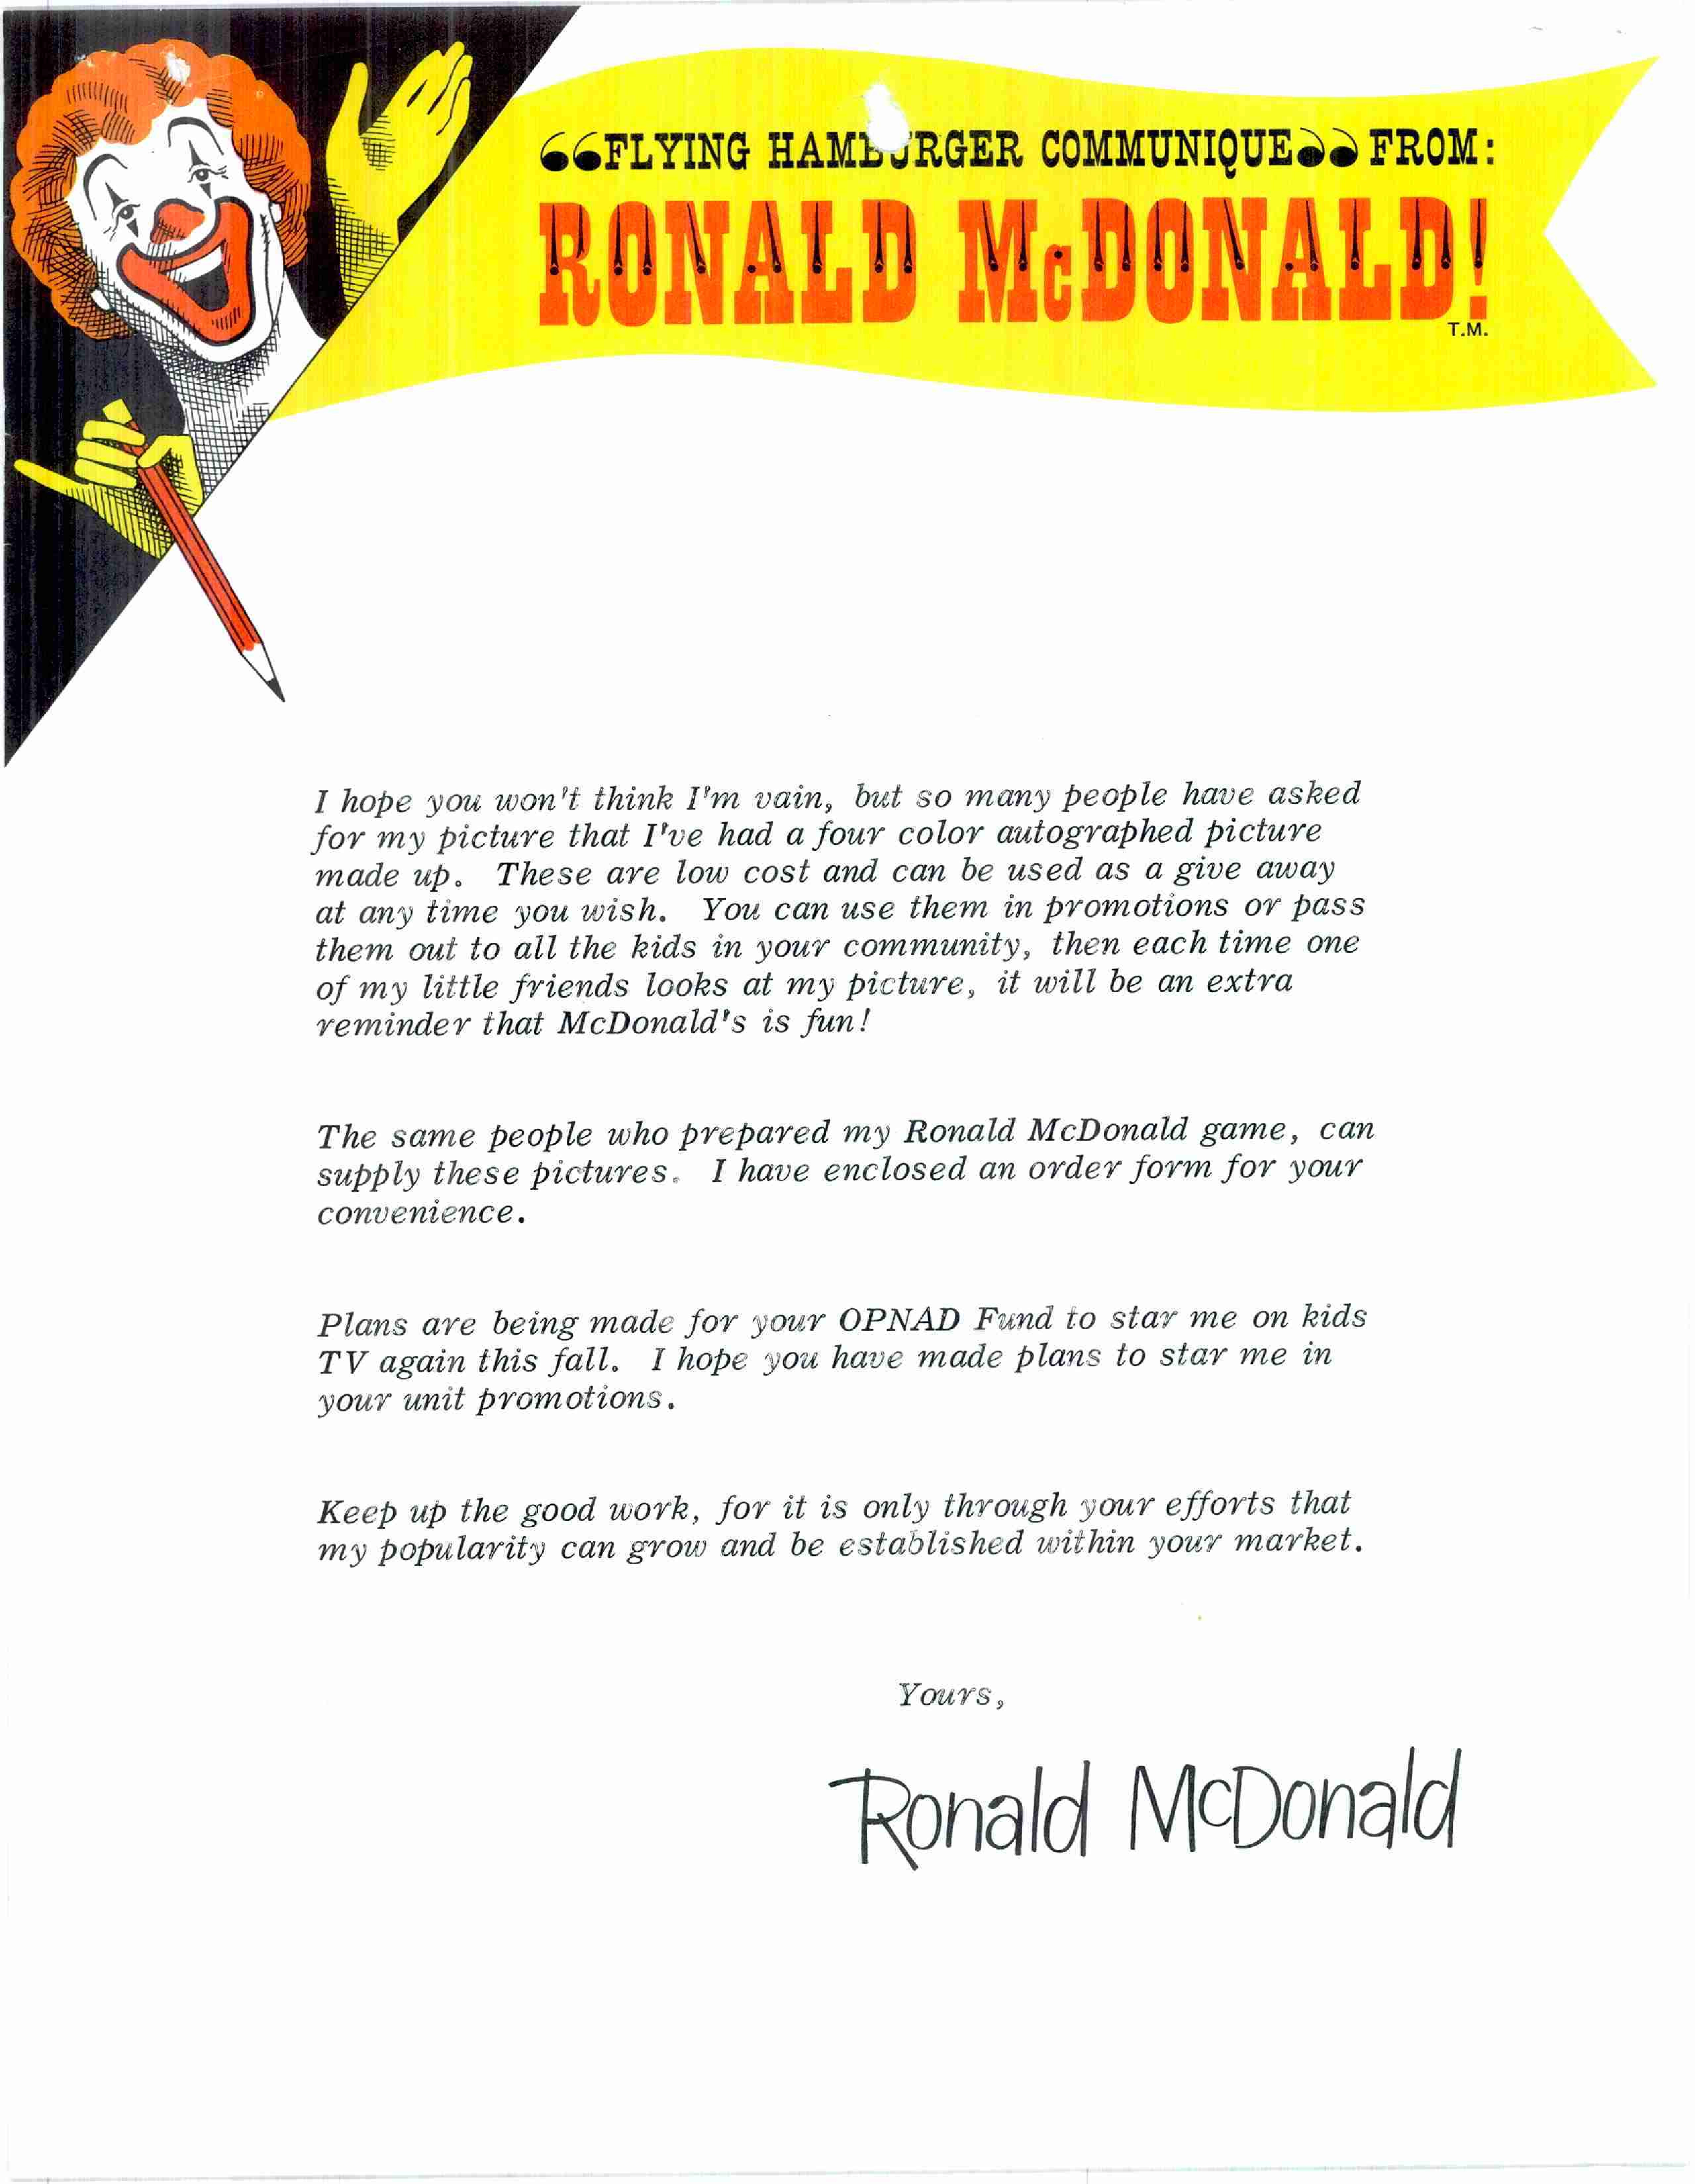 RONALD MCDONALD